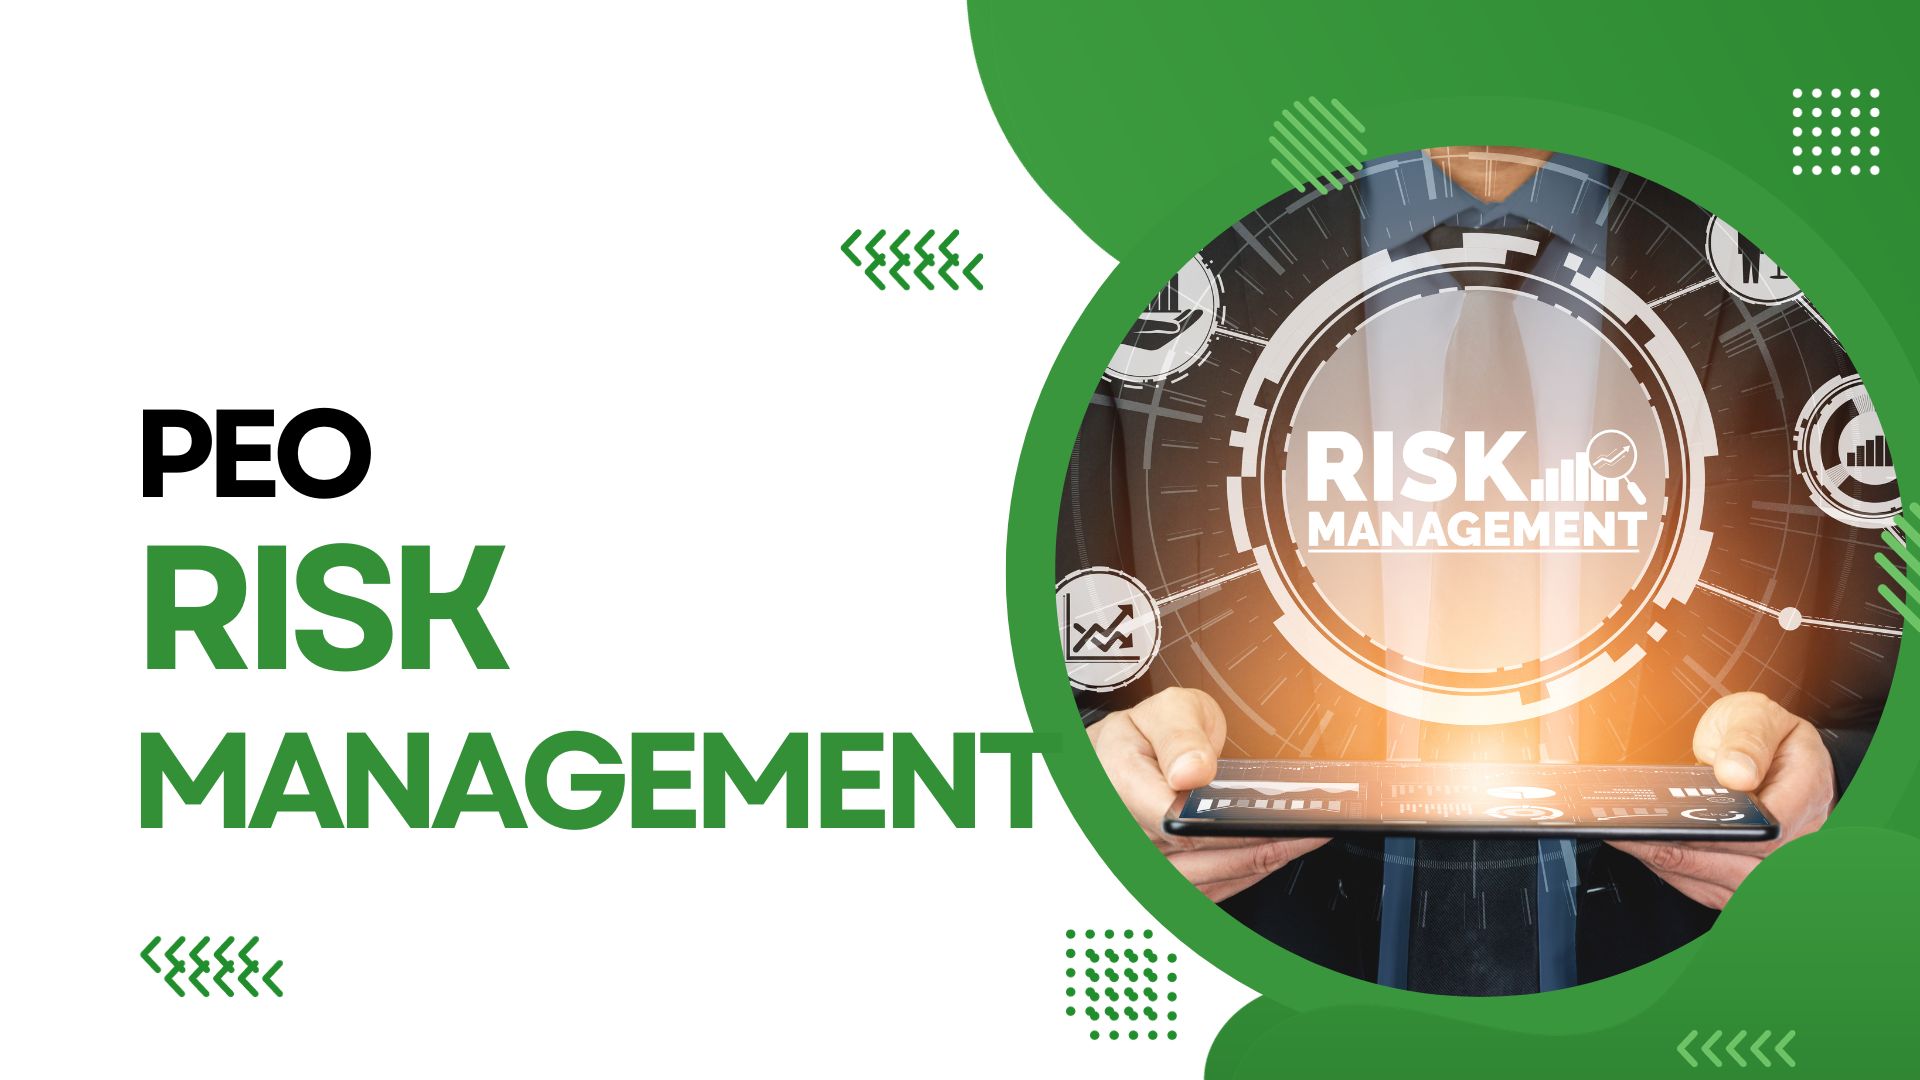 PEO Risk Management